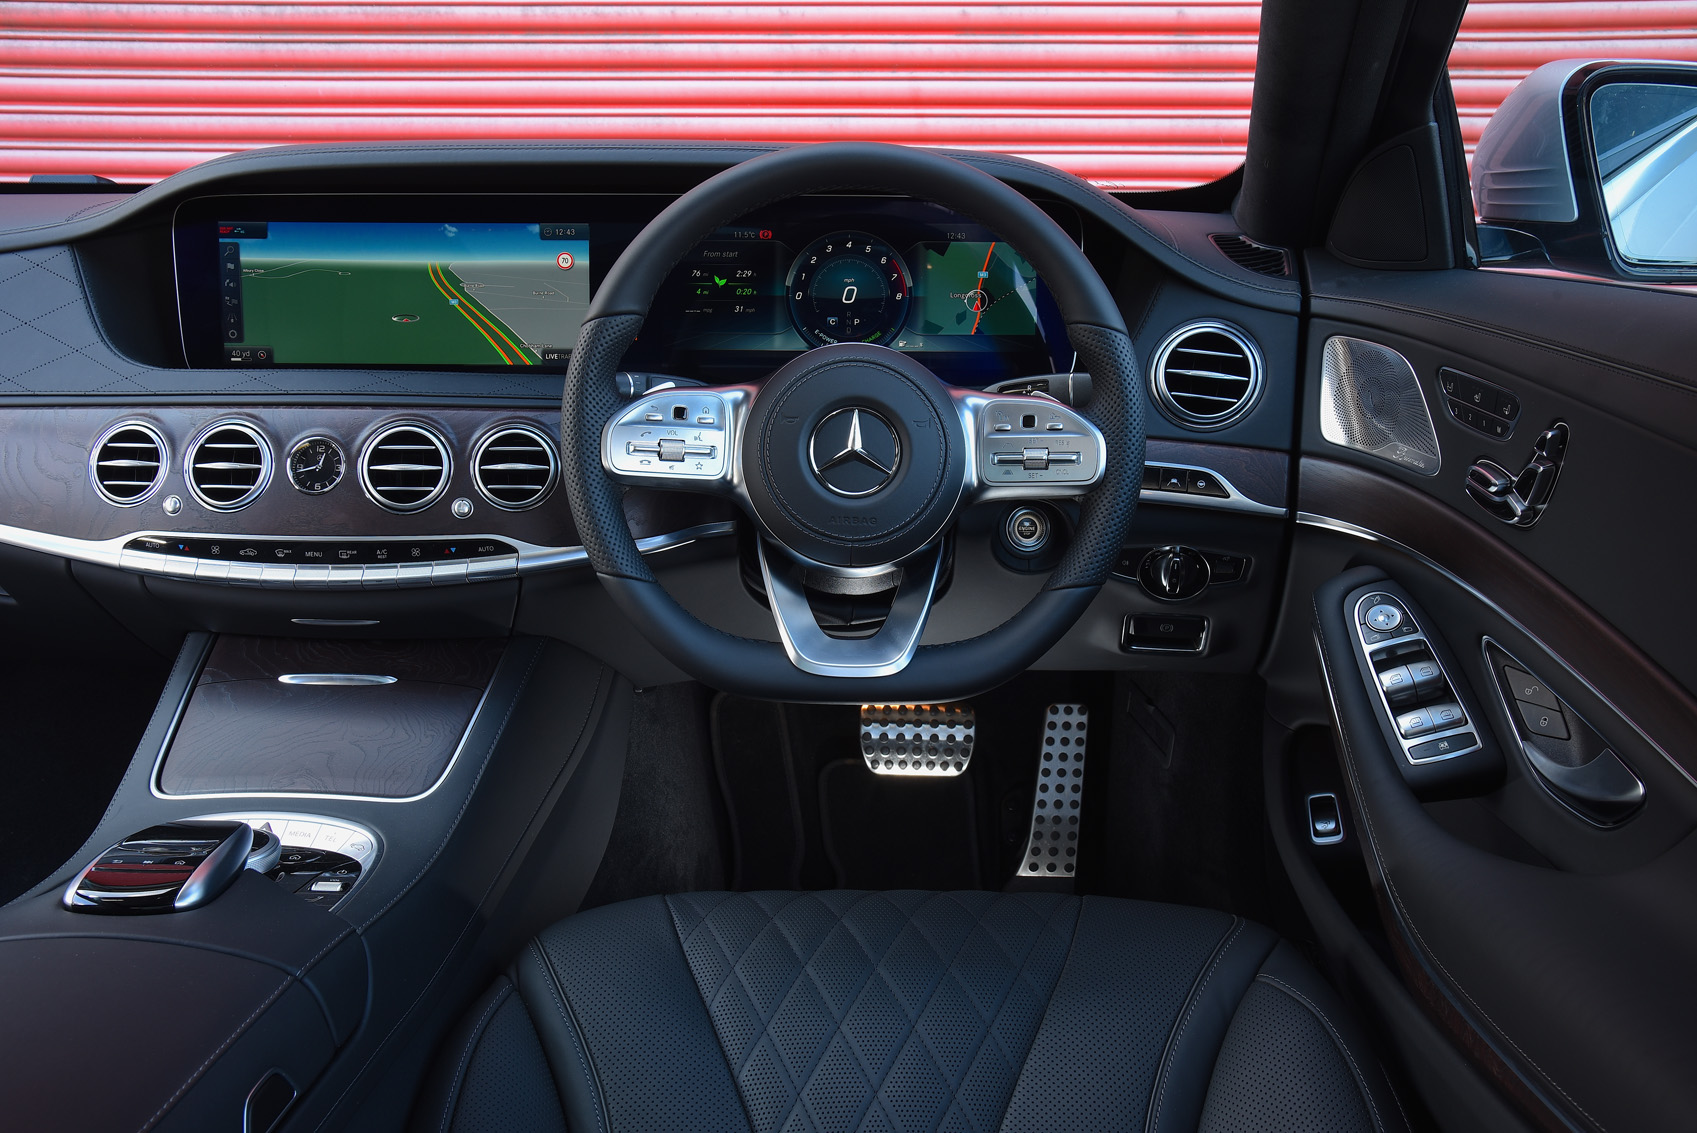 Mercedes-Benz S-Class dashboard